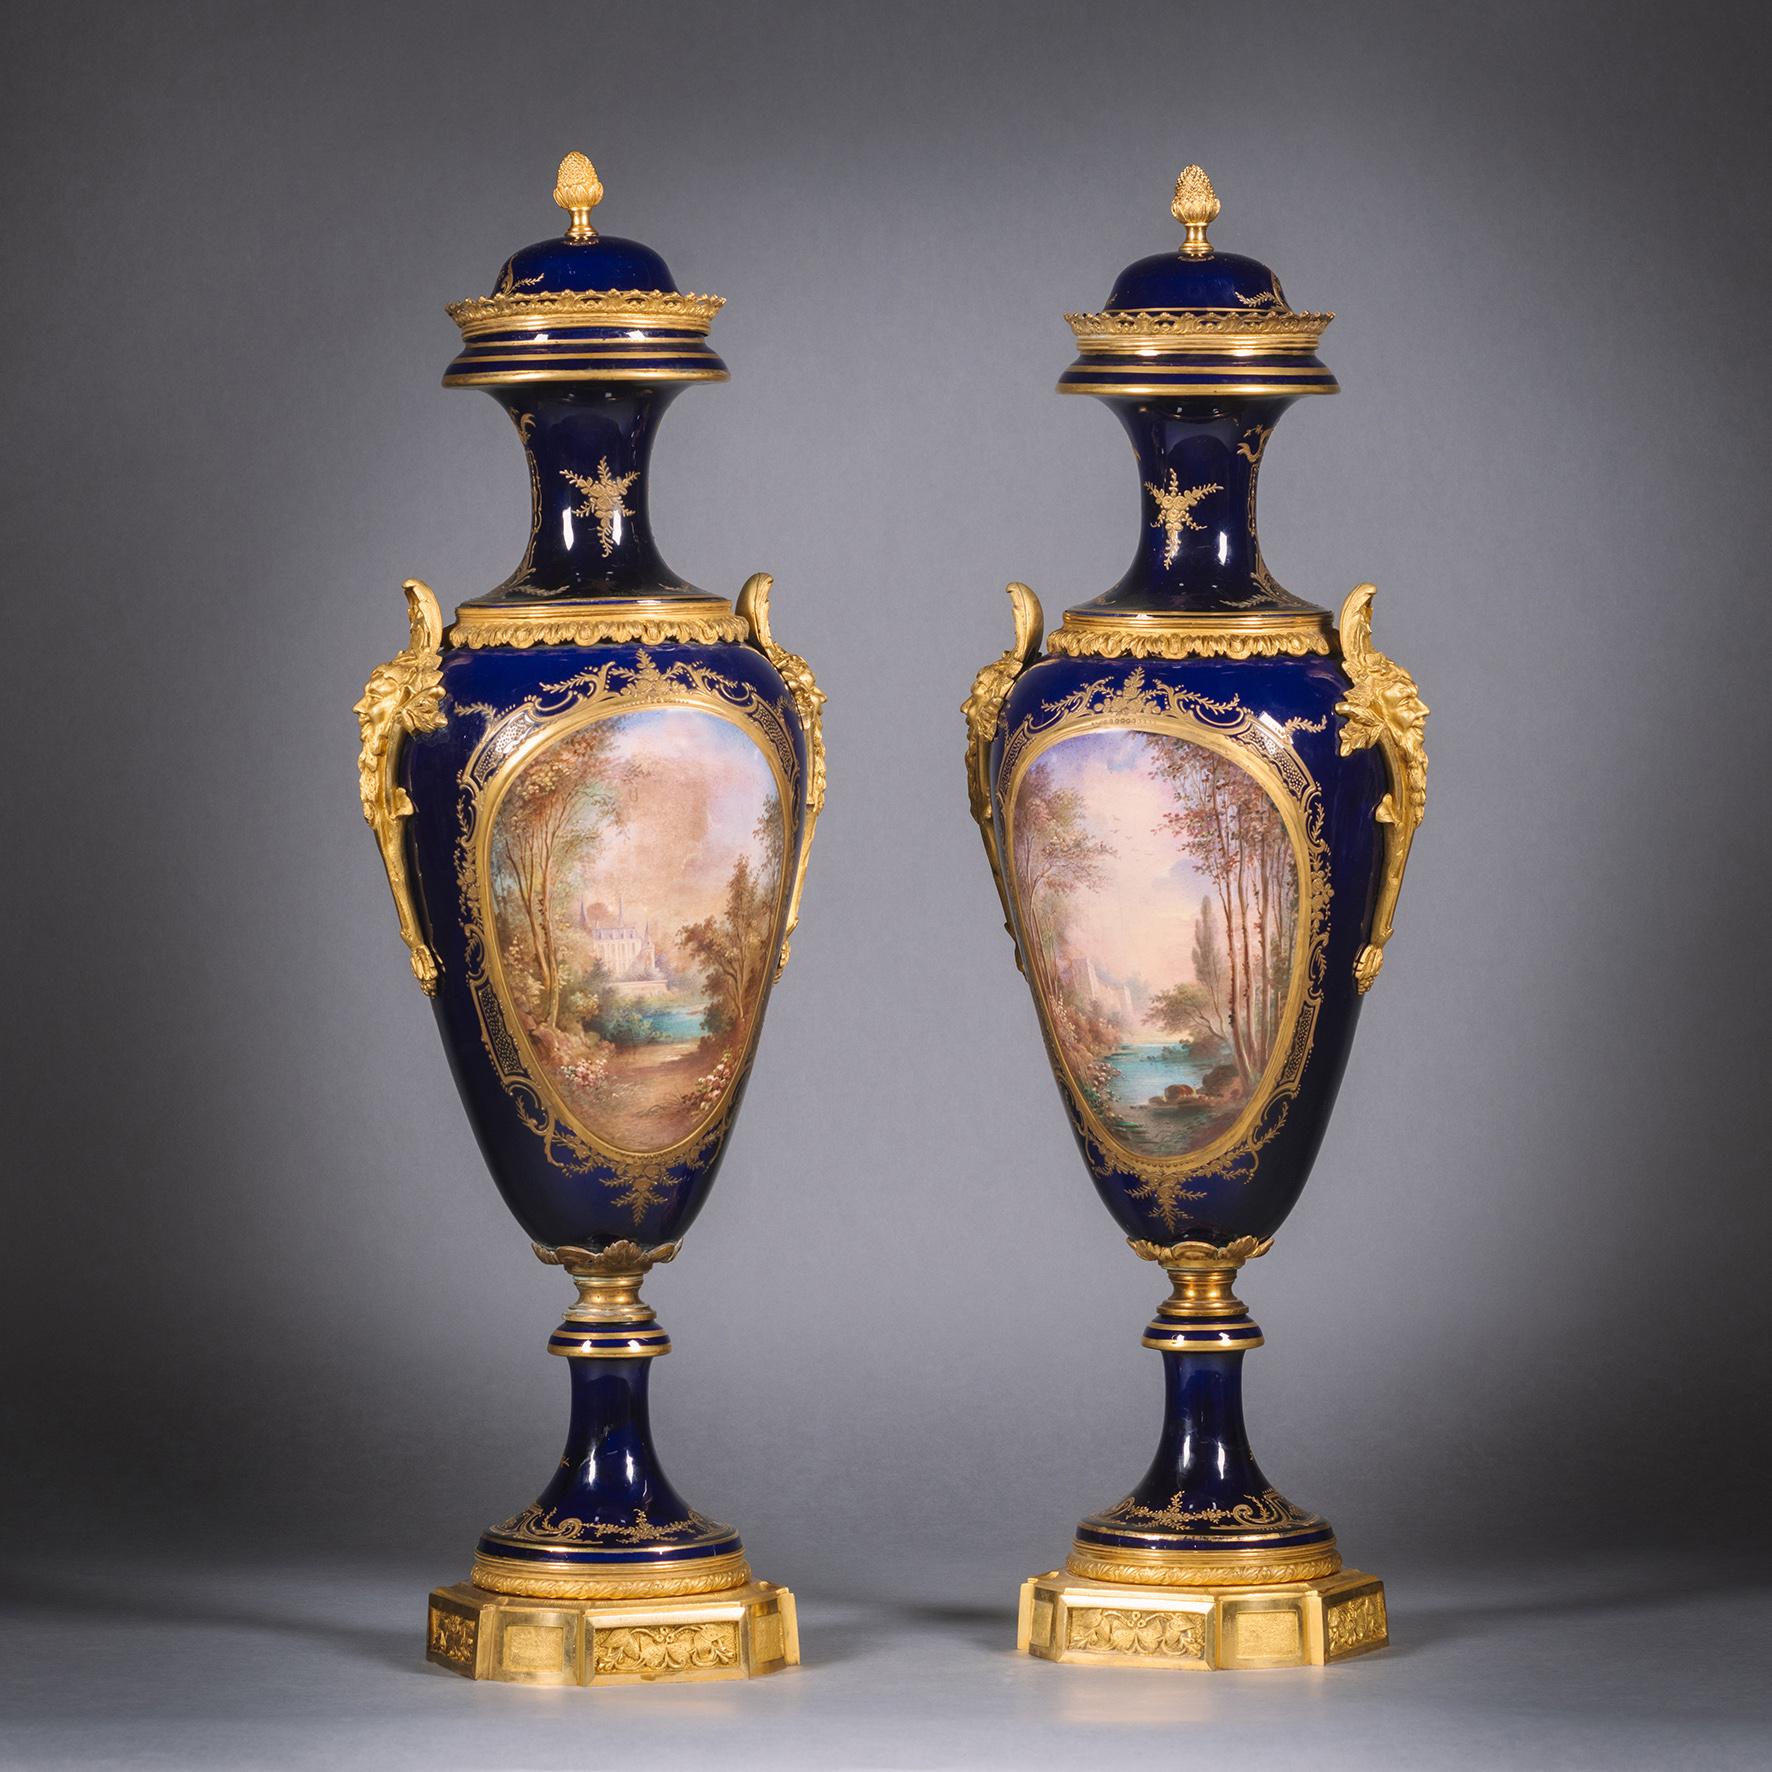 Ein feines Paar vergoldeter, bronzierter Porzellanvasen und -deckel im Stil von Sèvres. 

Die gemalten Reserven sind mit 